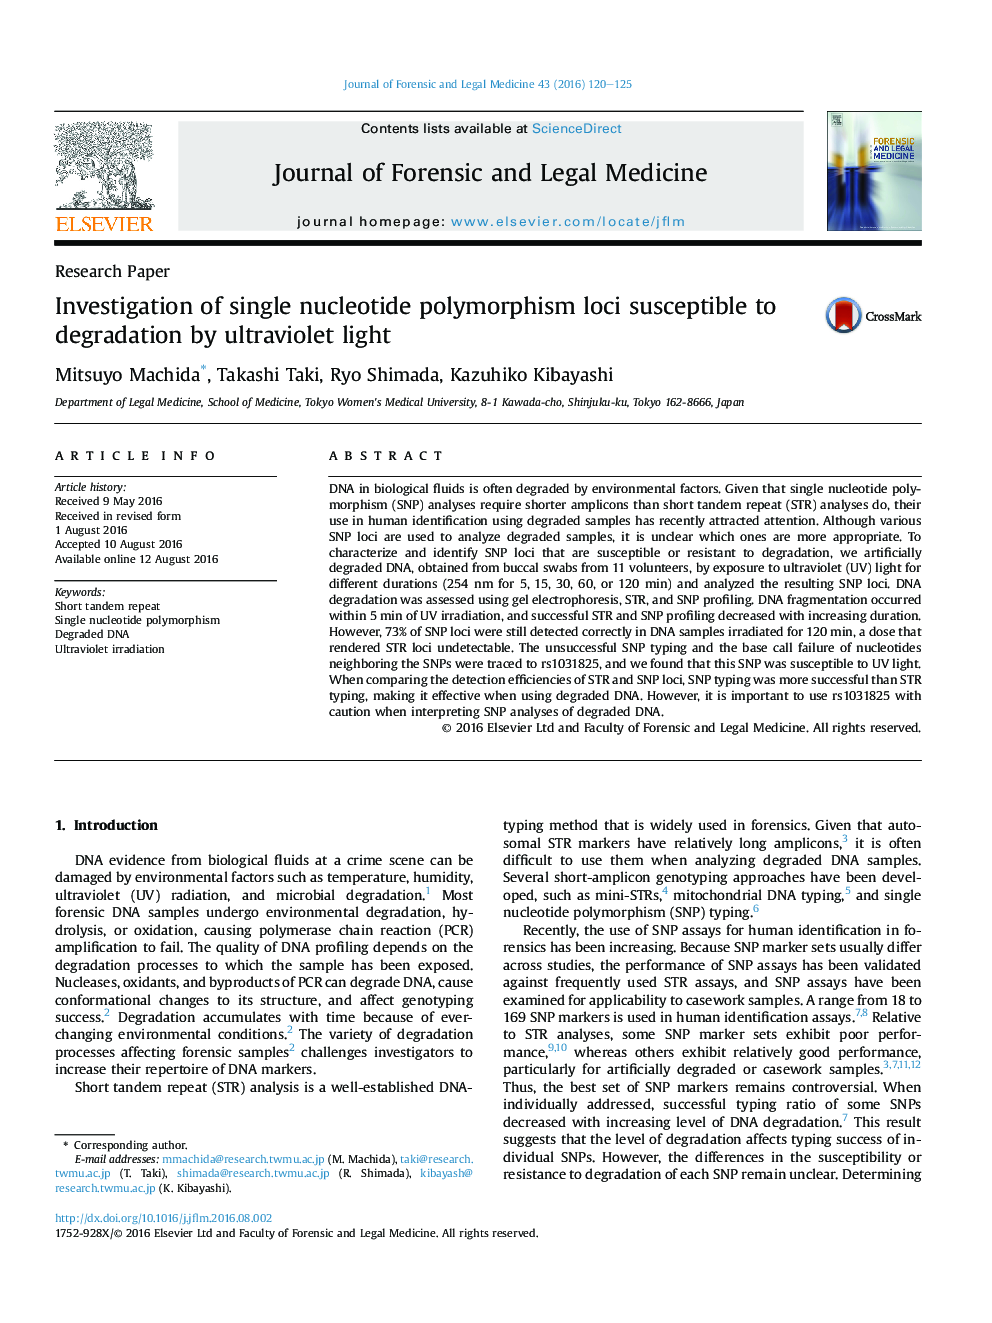 بررسی لکوهای پلی مورفیسم تک نوکلئوتیدی حساس به تخریب نور ماوراء بنفش 